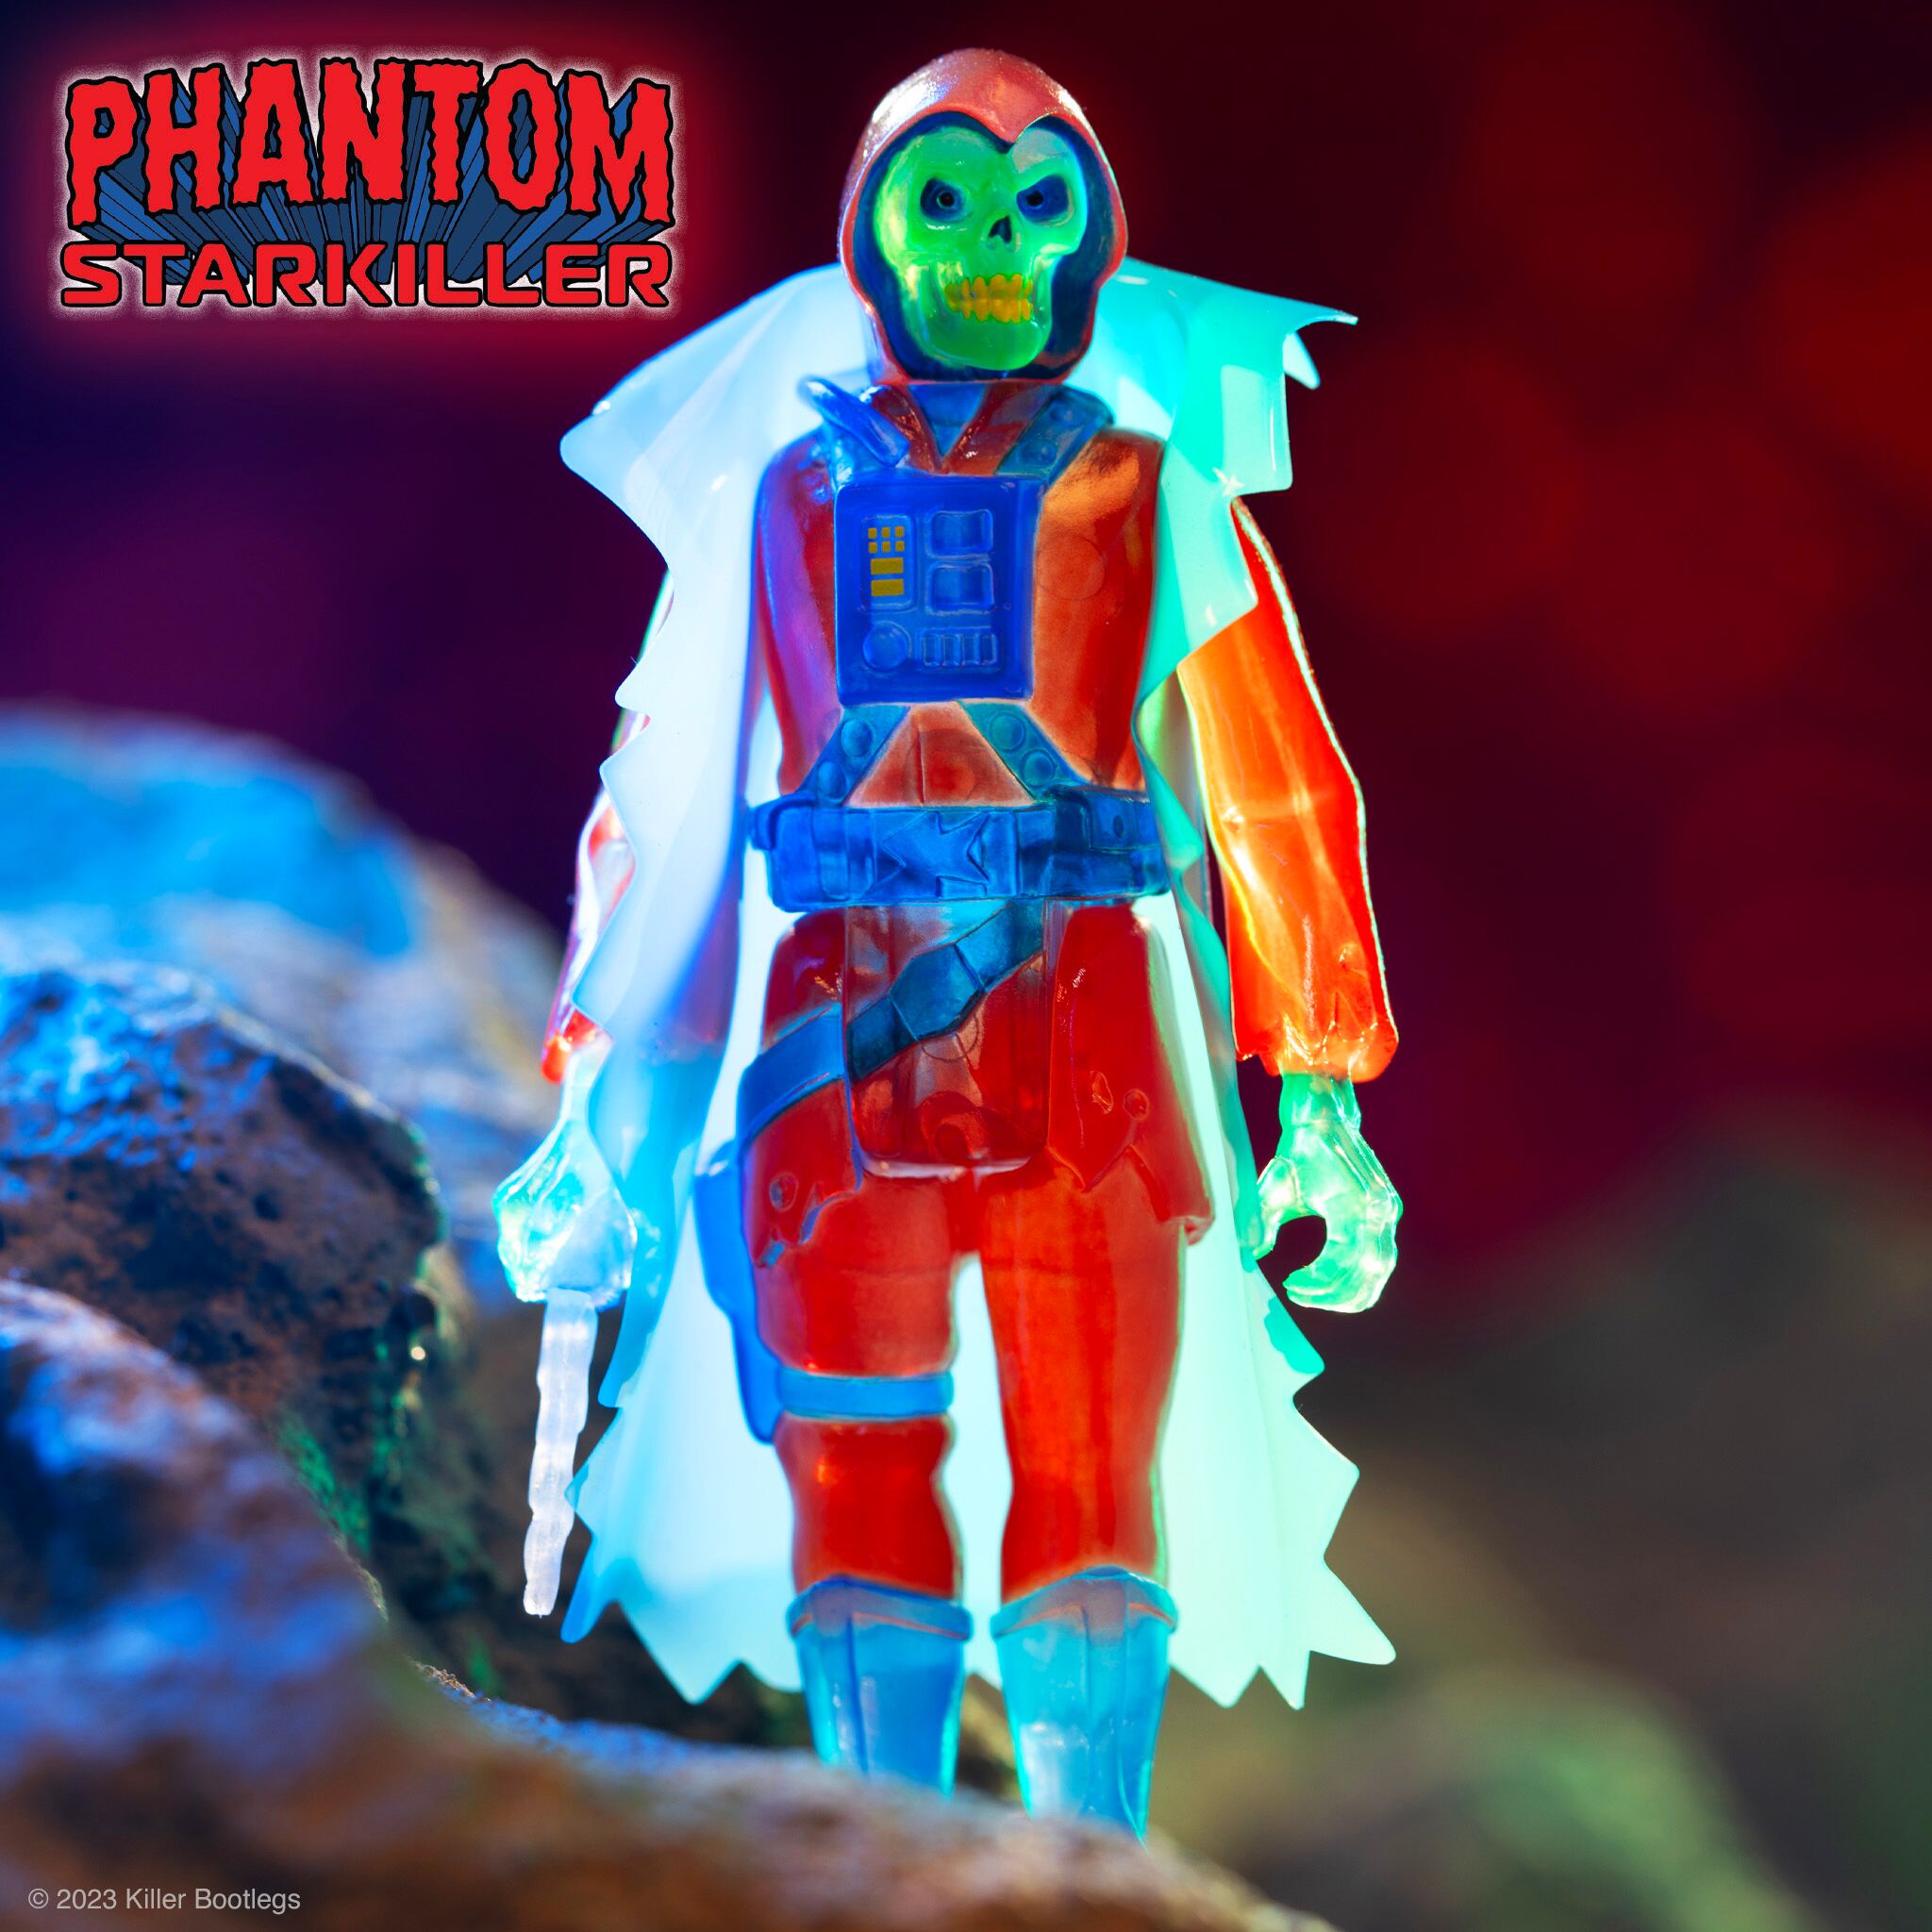 Phantom Starkiller ReAction Figures - Ghost of Phantom Starkiller